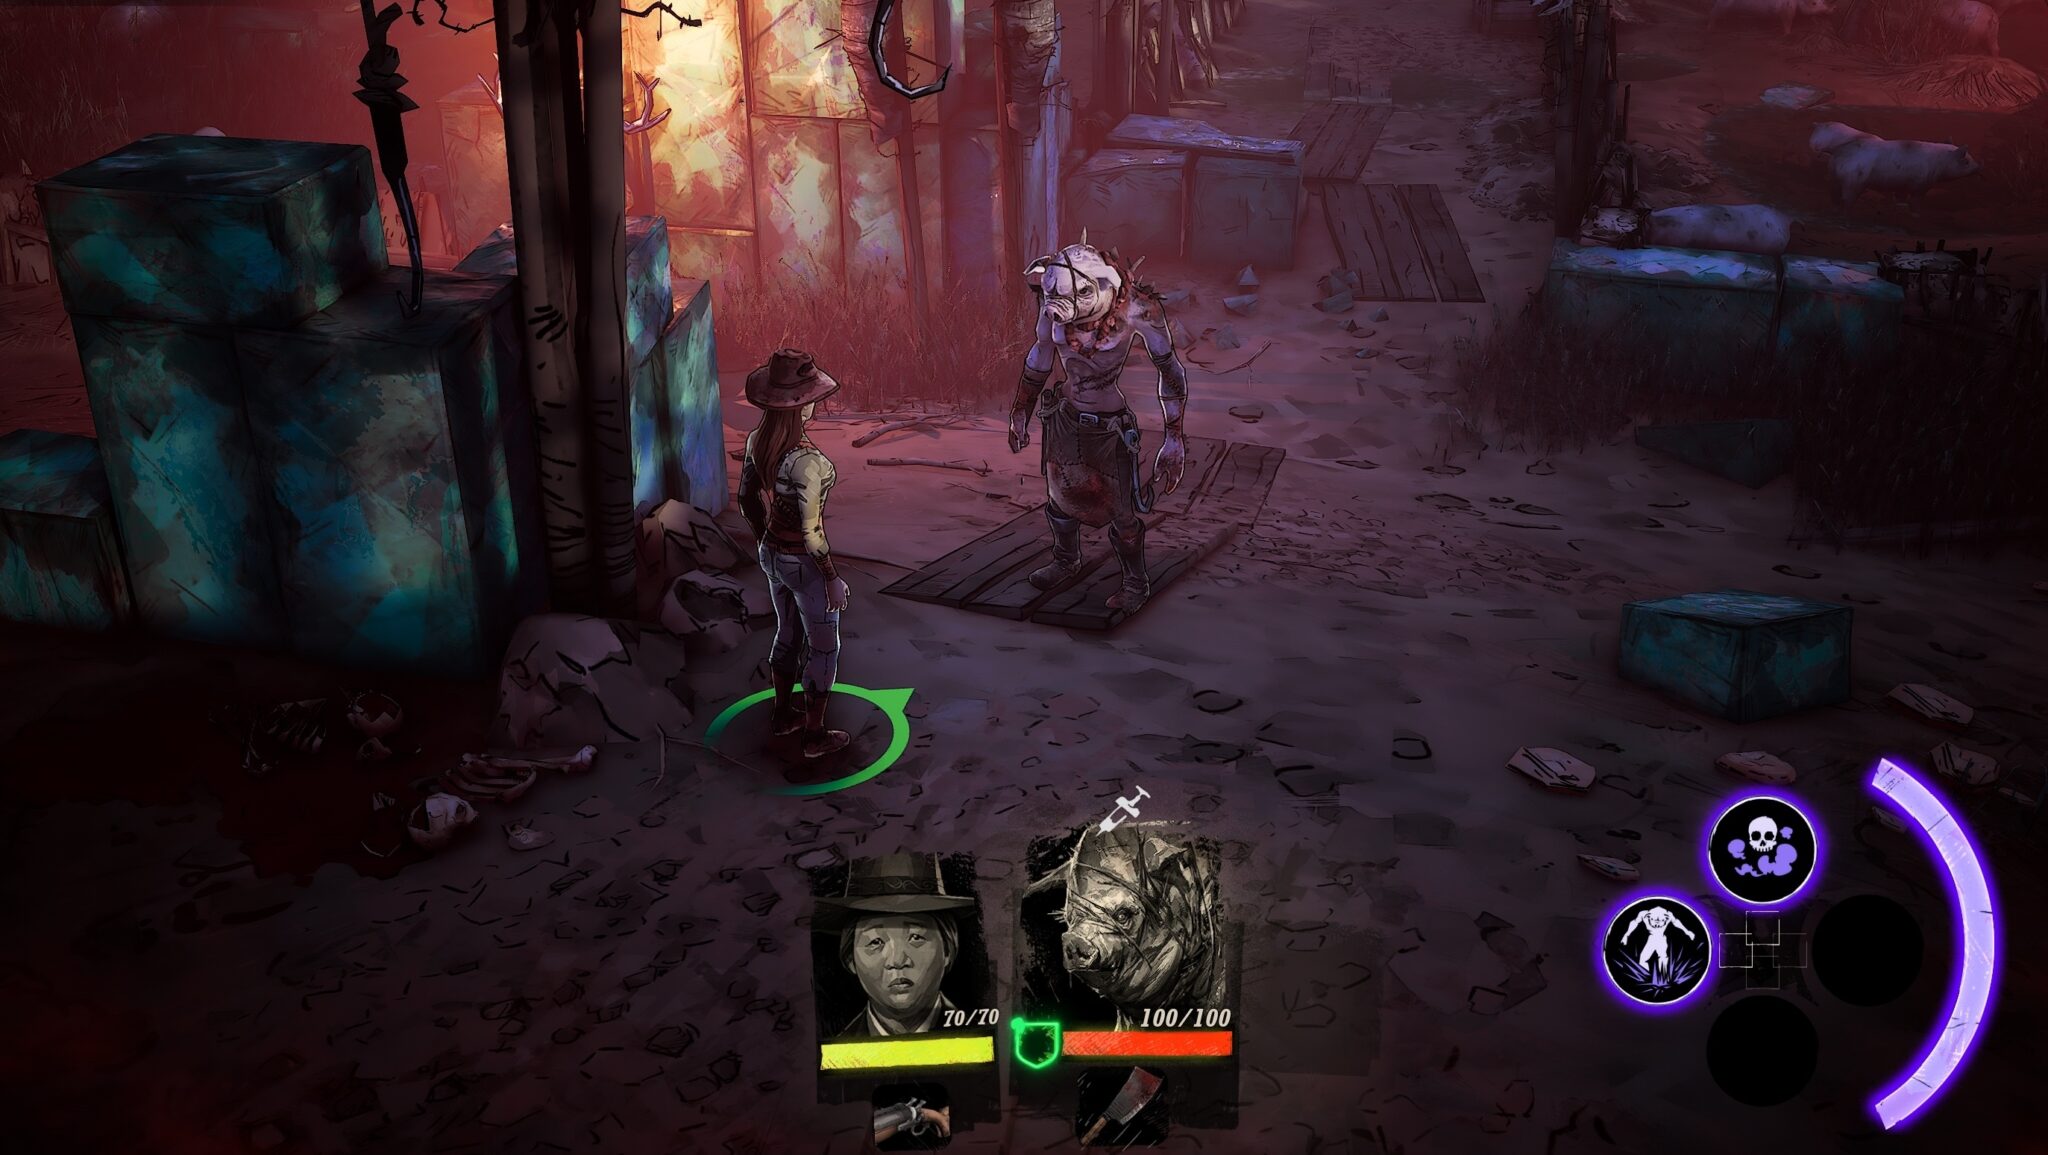 Au cours du jeu, vous incarnez successivement cinq personnages totalement différents. Le maudit Pigman veut reconstruire sa vie d'homme.